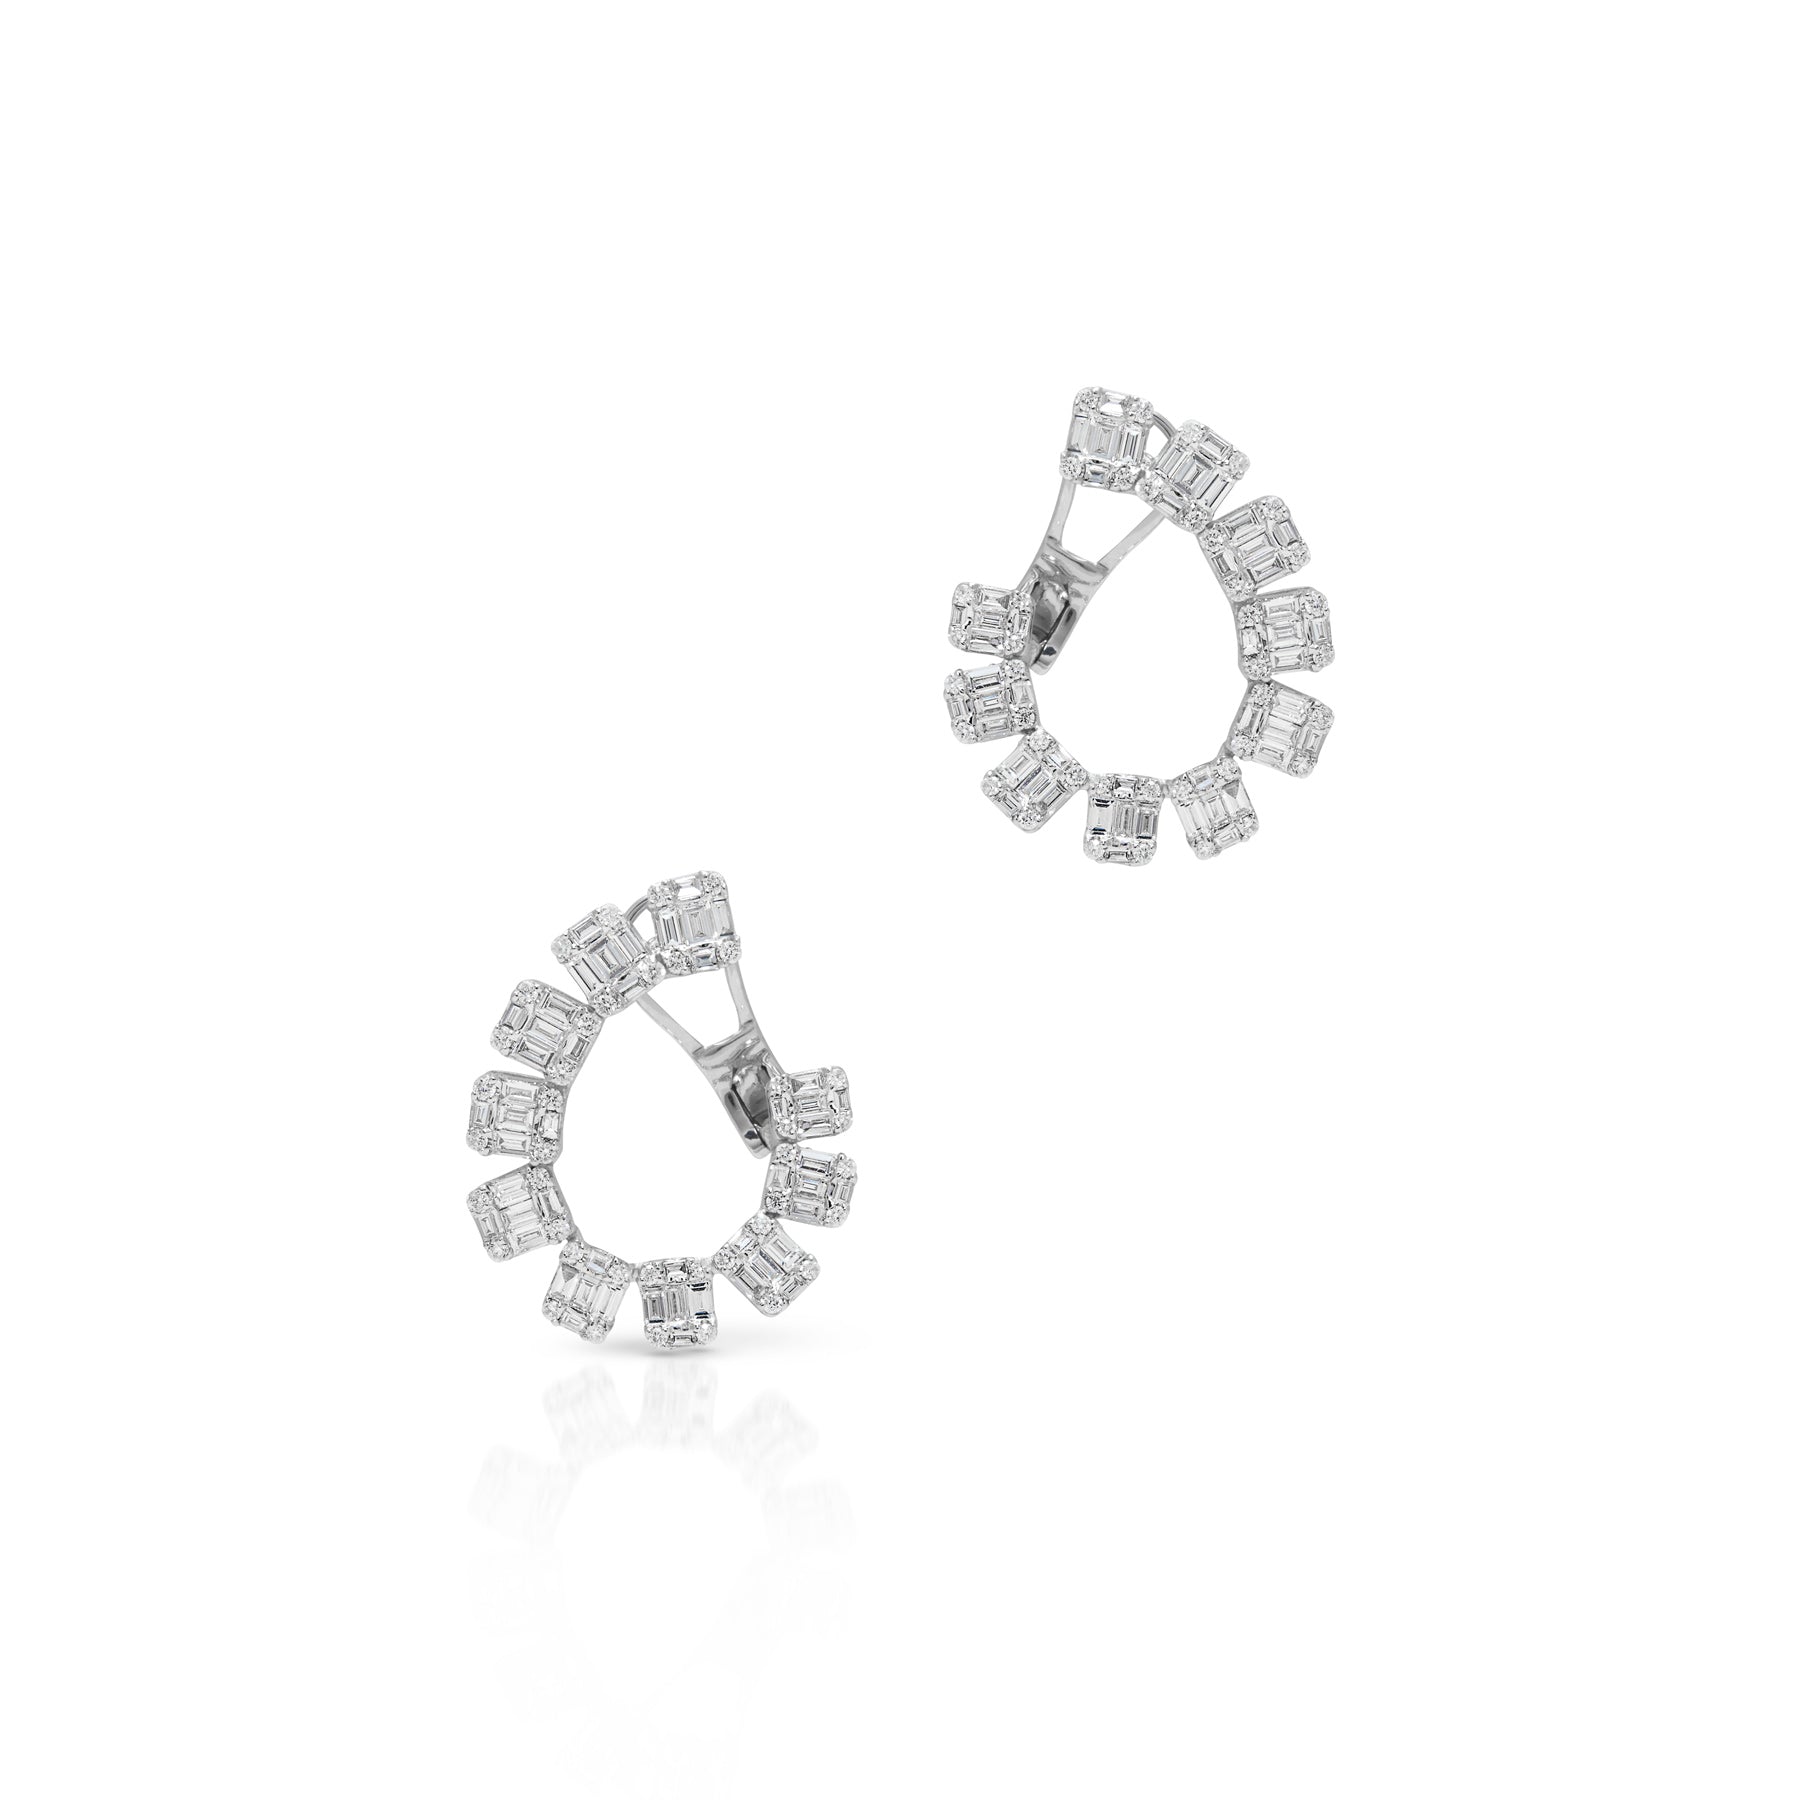 14KT White Gold Baguette Diamond Marceline Earrings